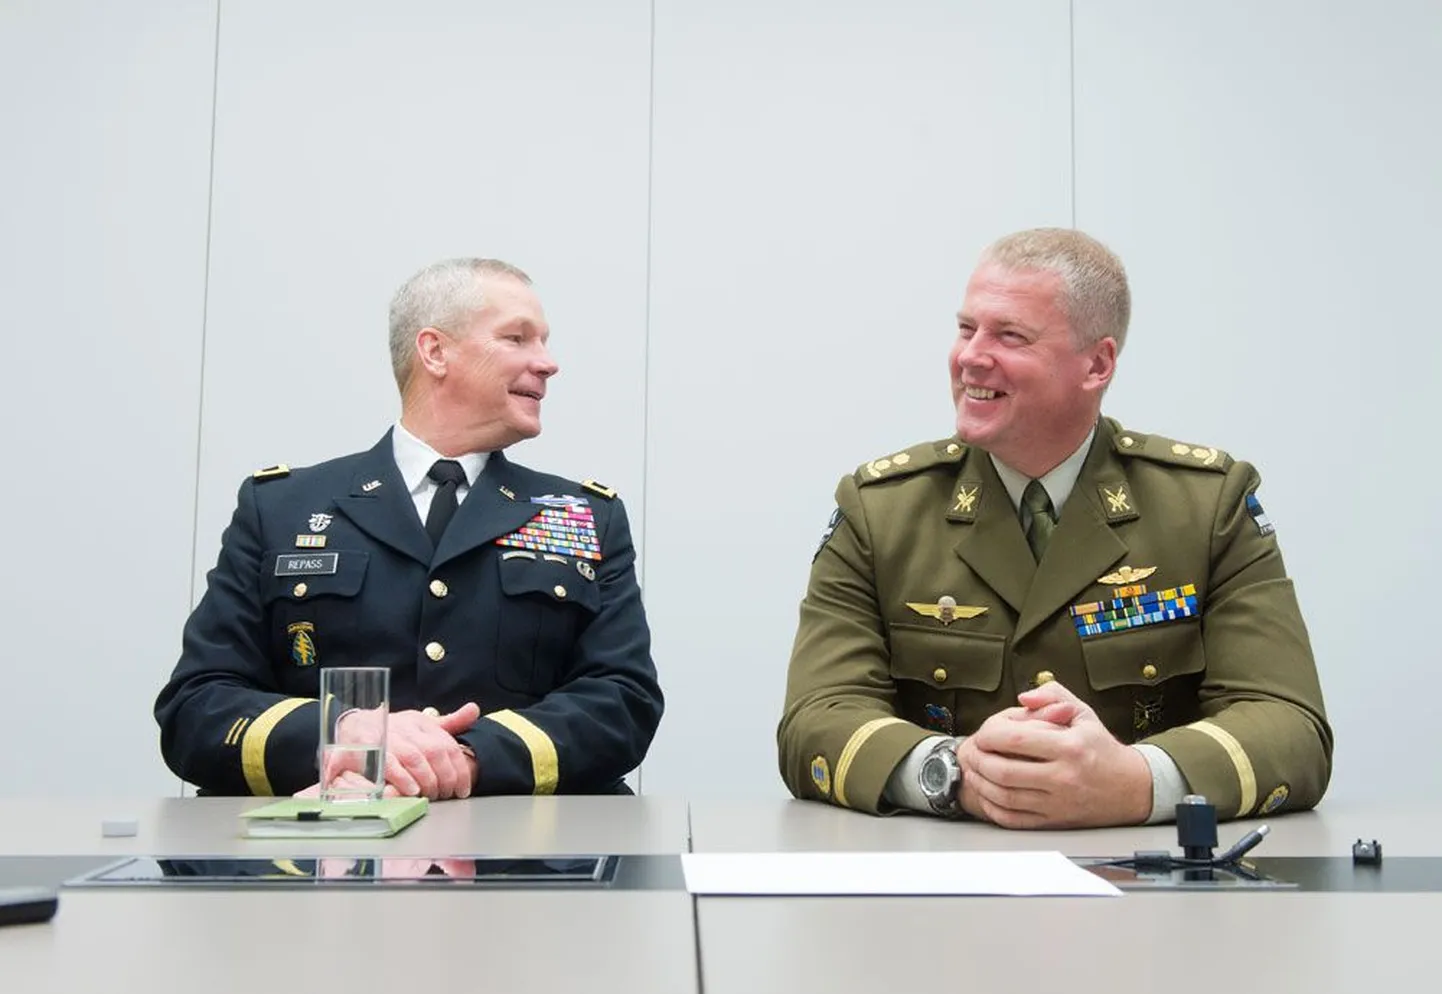 Ameerika Ühendriikide Euroopa erivägede ülem kindralmajor Michael S. Repass ja Eesti erioperatsioonide üksuse ülem kolonelleitmant Riho Ühtegi. Foto: